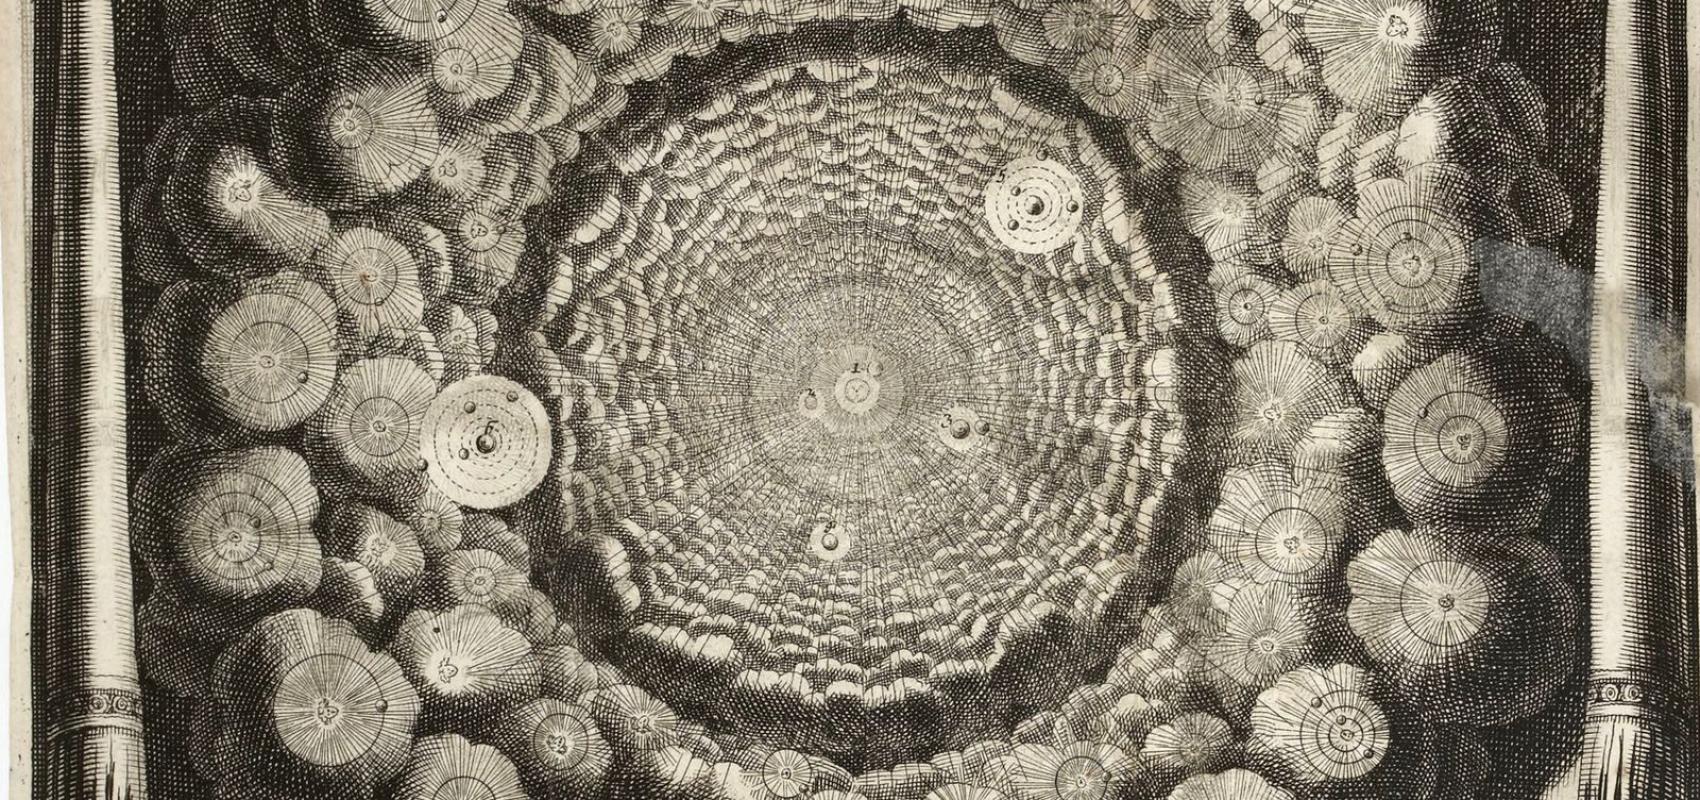 Illustration pour « Entretiens sur la pluralité des mondes » de Bernard de Fontenelle - 1686 - BnF, Réserve des livres rares